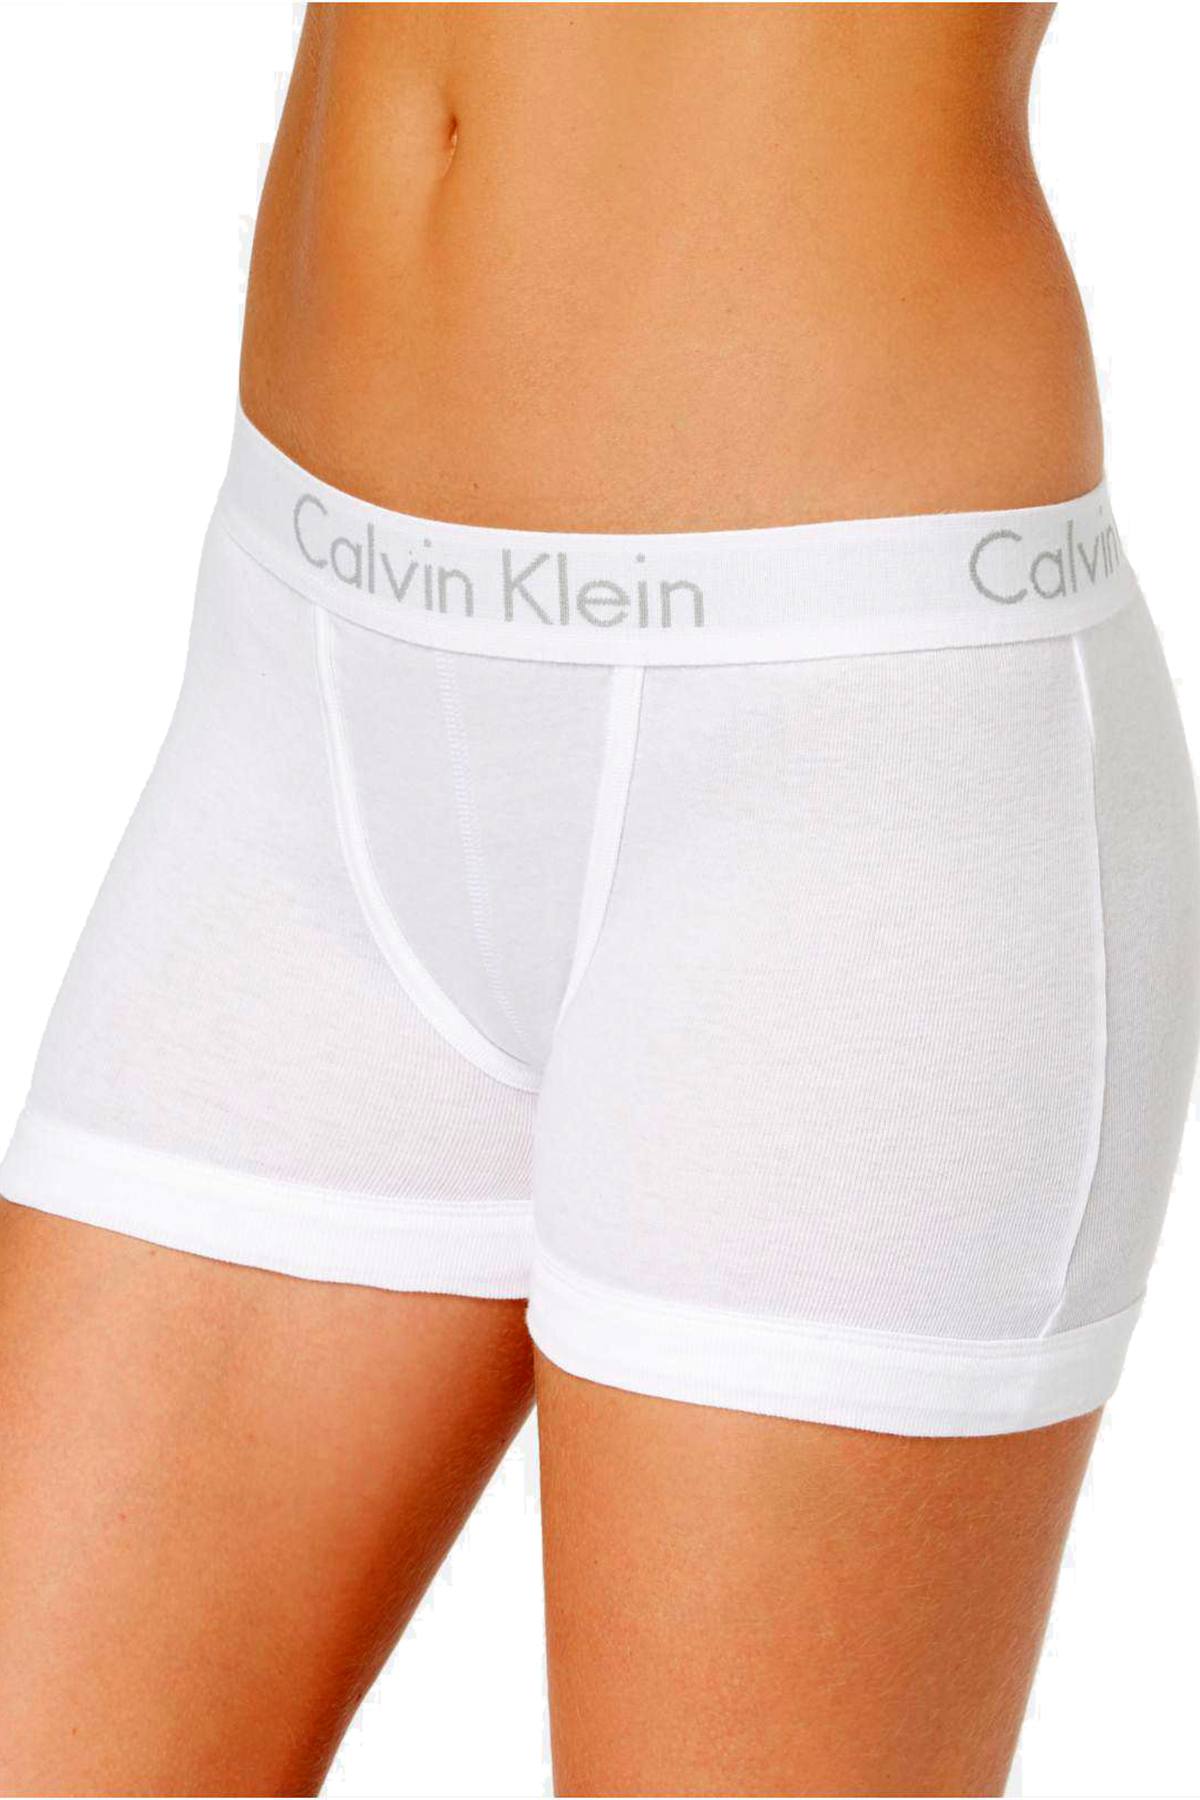 Calvin Klein Underwear White Cotton Boy Shorts Calvin Klein Underwear